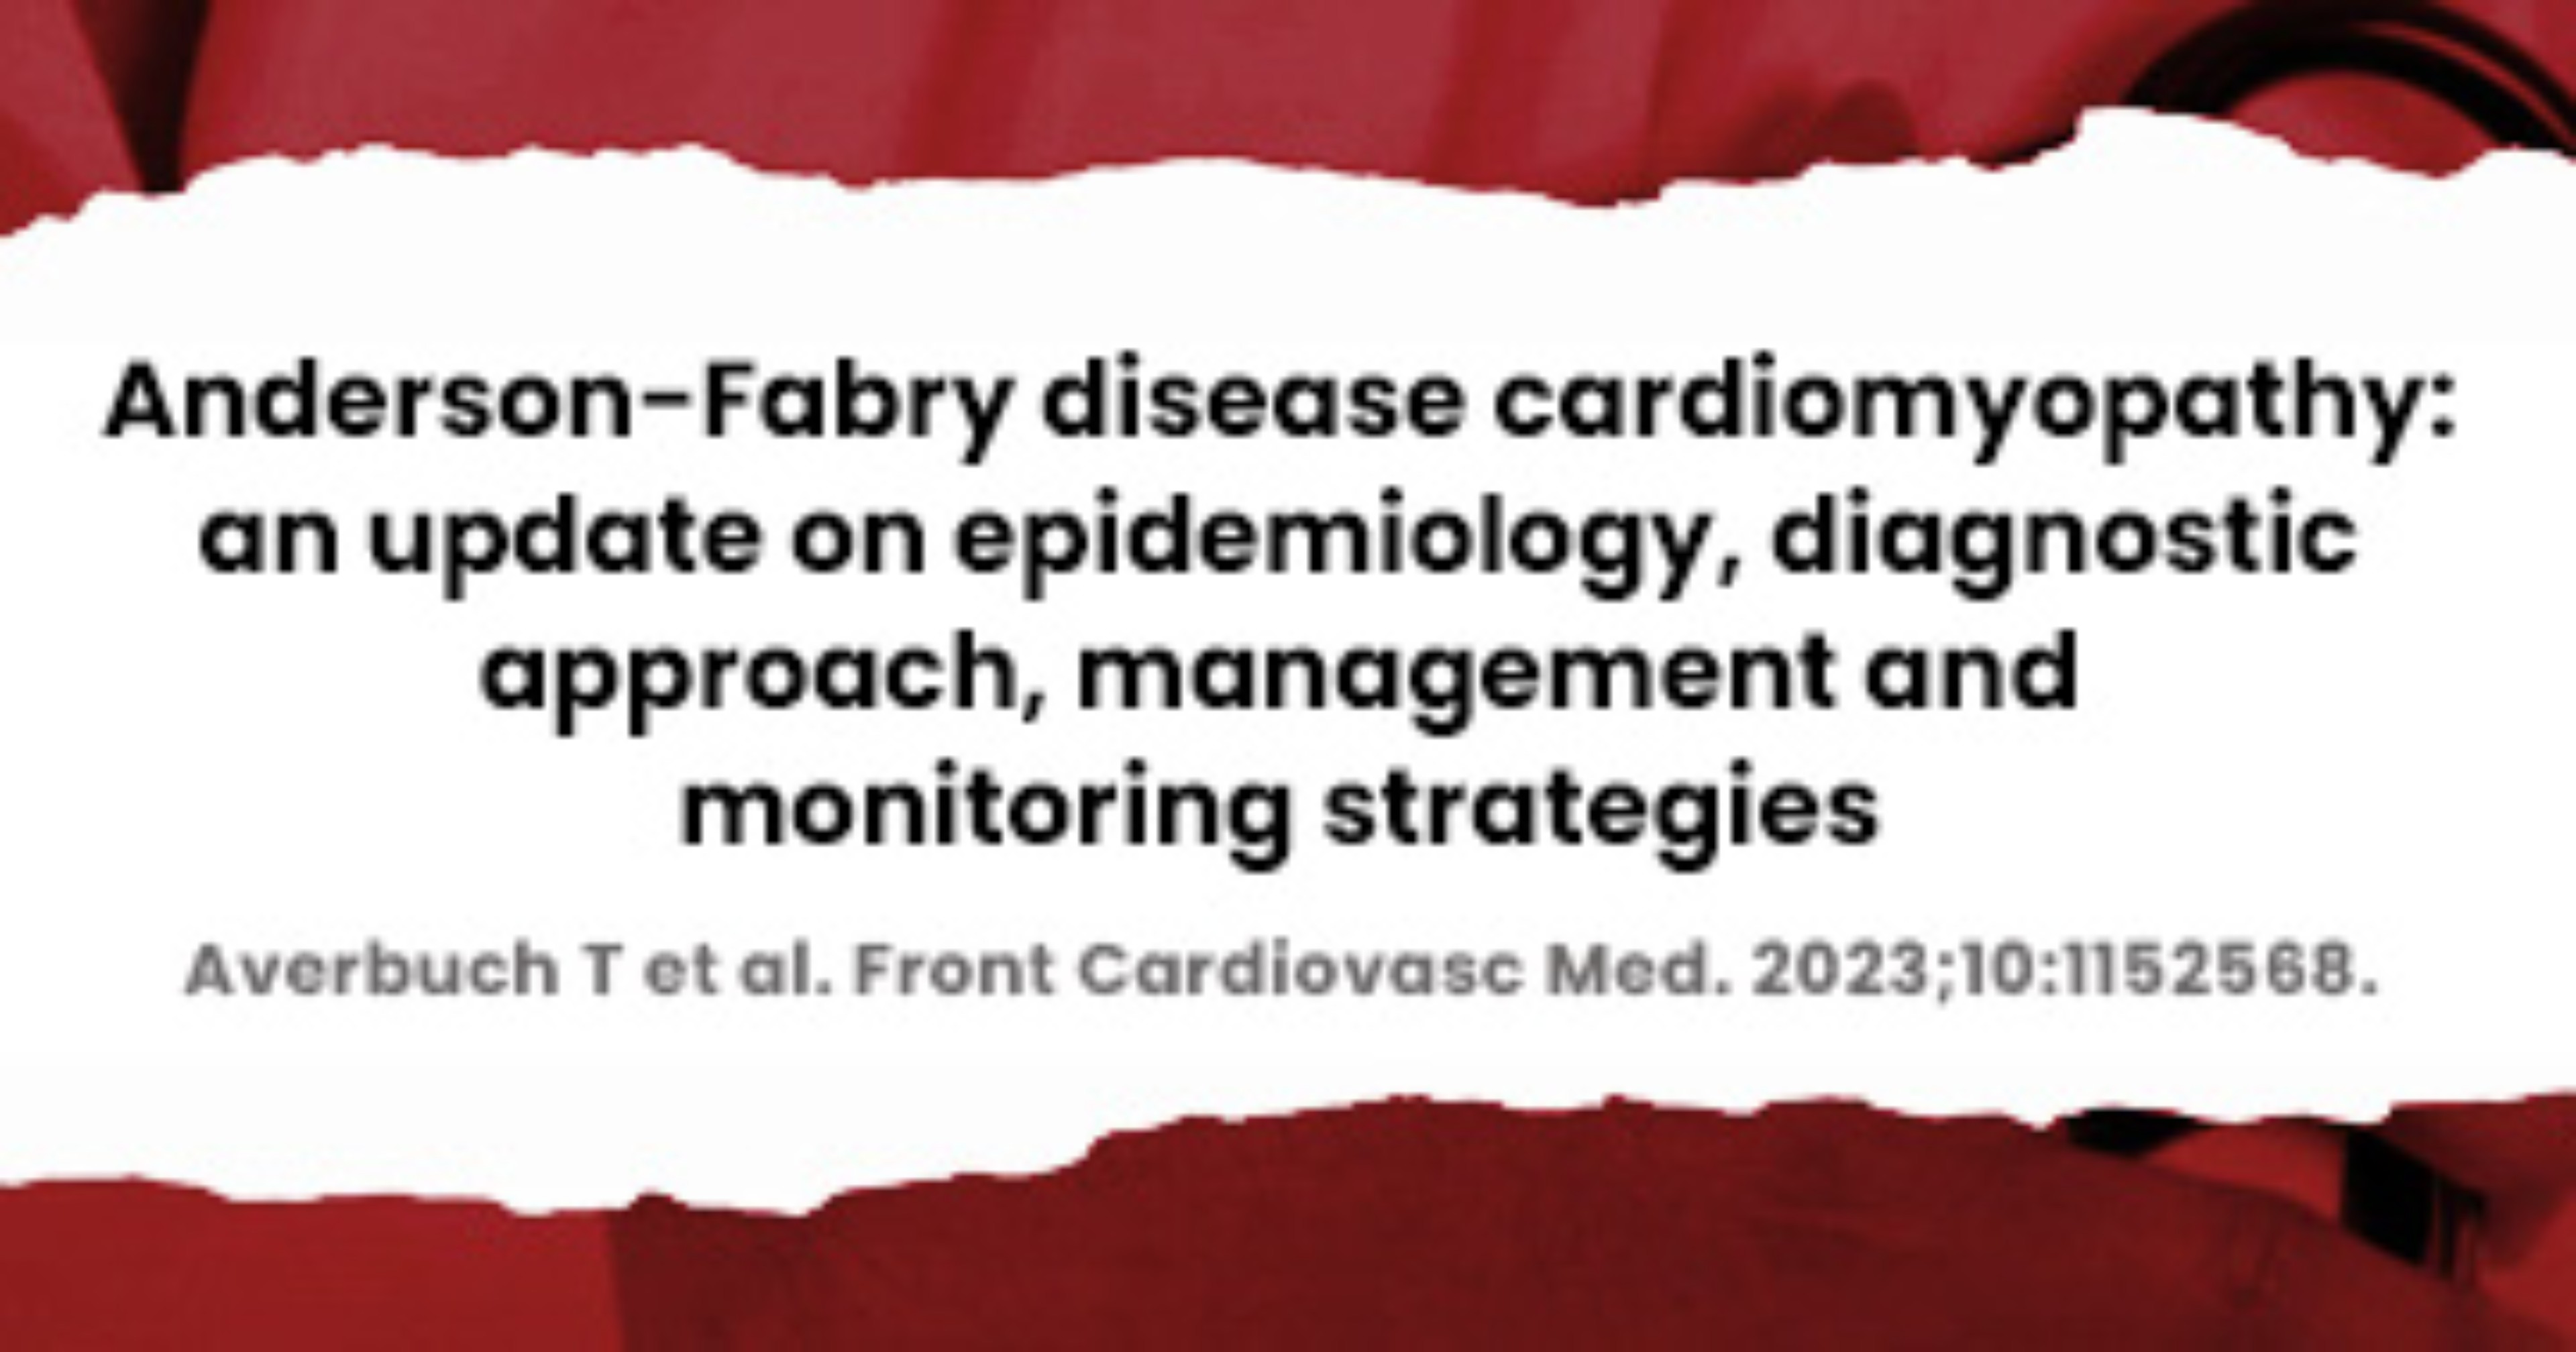 La-cardiomiopatia-nella-malattia-di-Anderson-Fabry